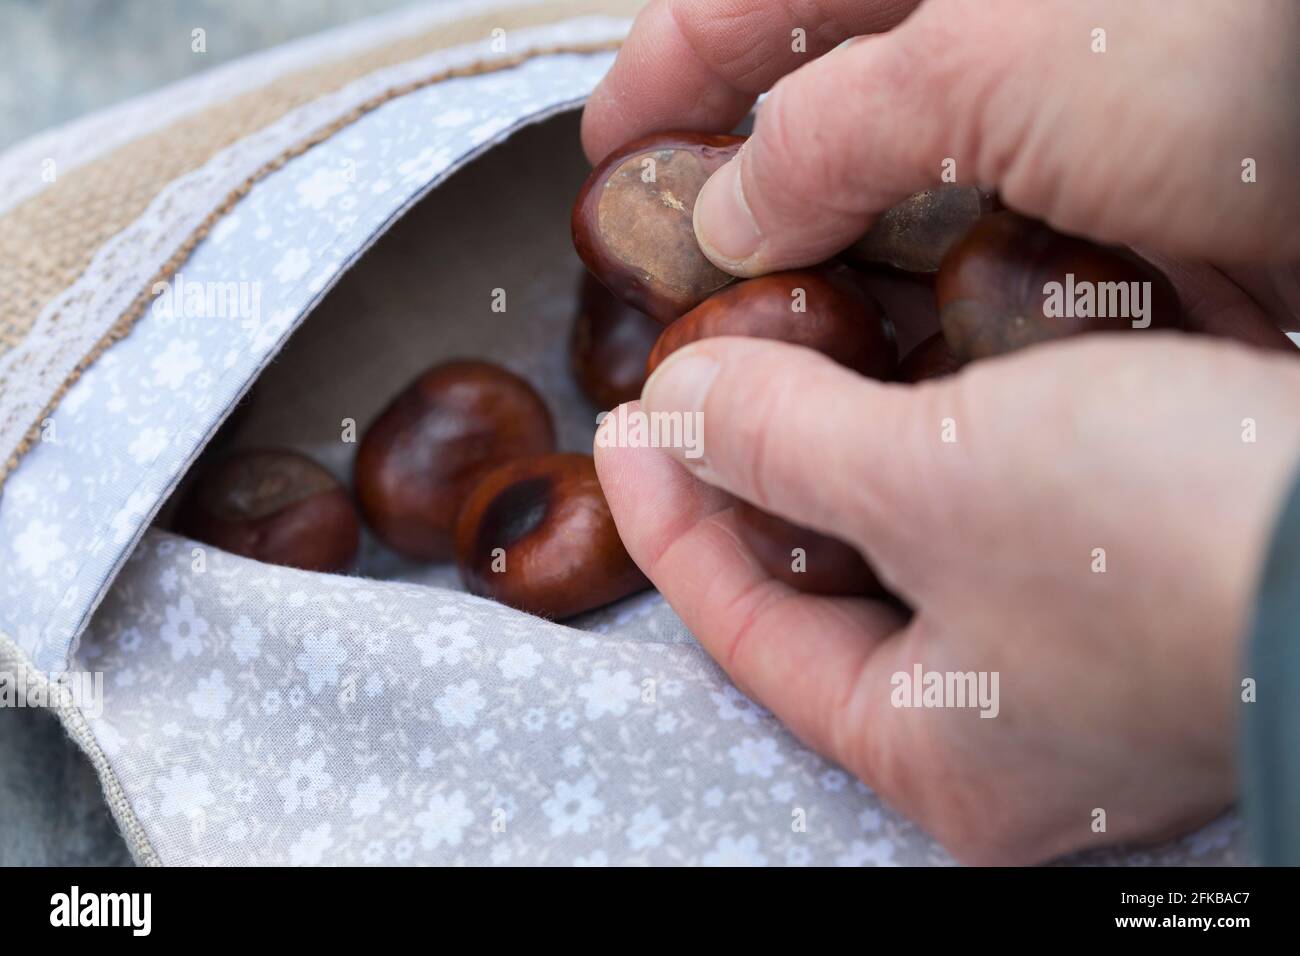 Kastanien (Aesculus hippocastanum), Kastanien werden in einen Kissenbezug gefüllt, können dann im Ofen erhitzt und als wärmende Kissen verwendet werden, Stockfoto